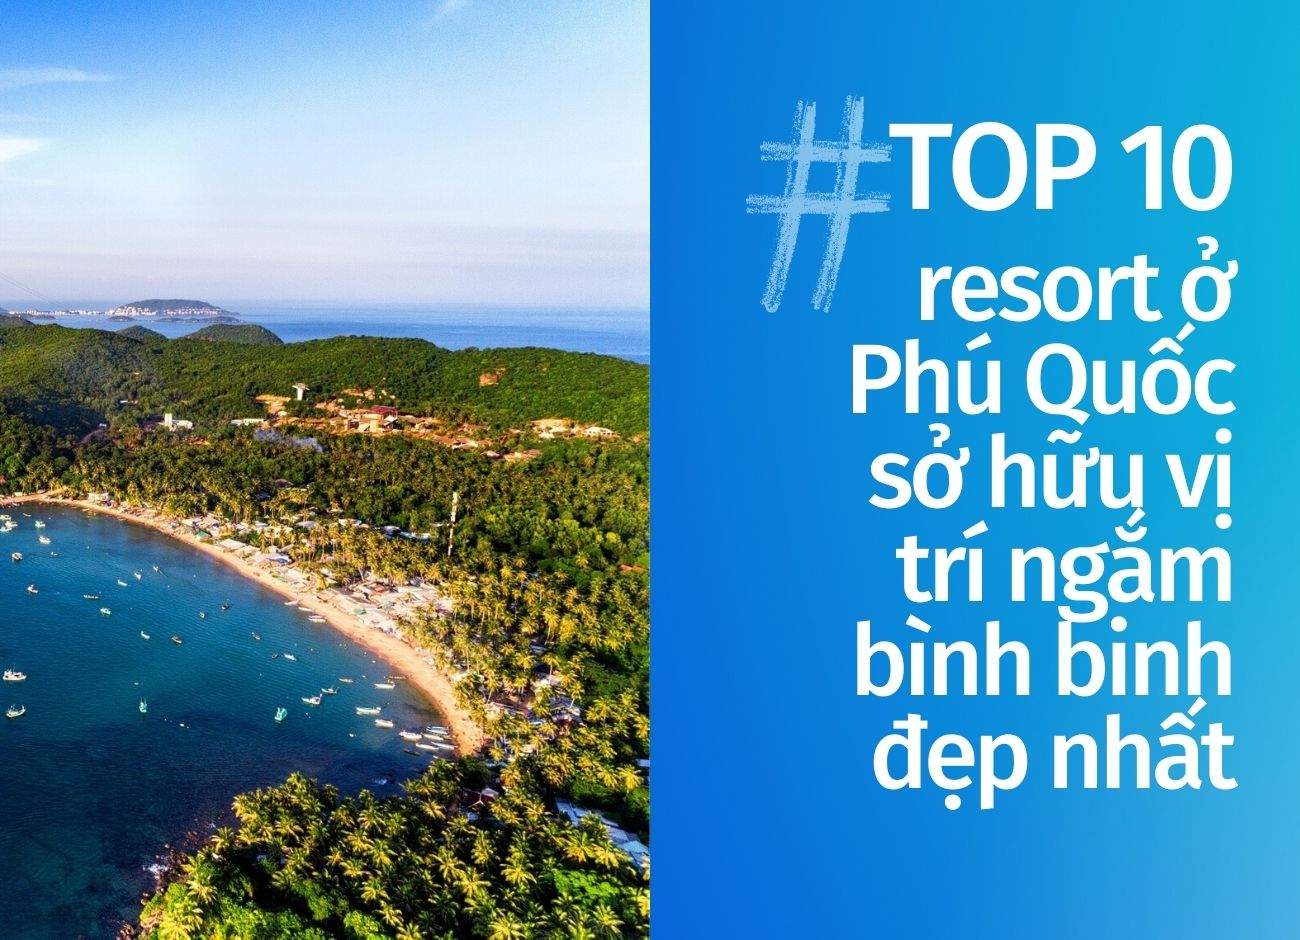 Top 10 resort Phú Quốc sở hữu vị trí ngắm bình binh đẹp nhất cập nhật tháng 07 năm 2022